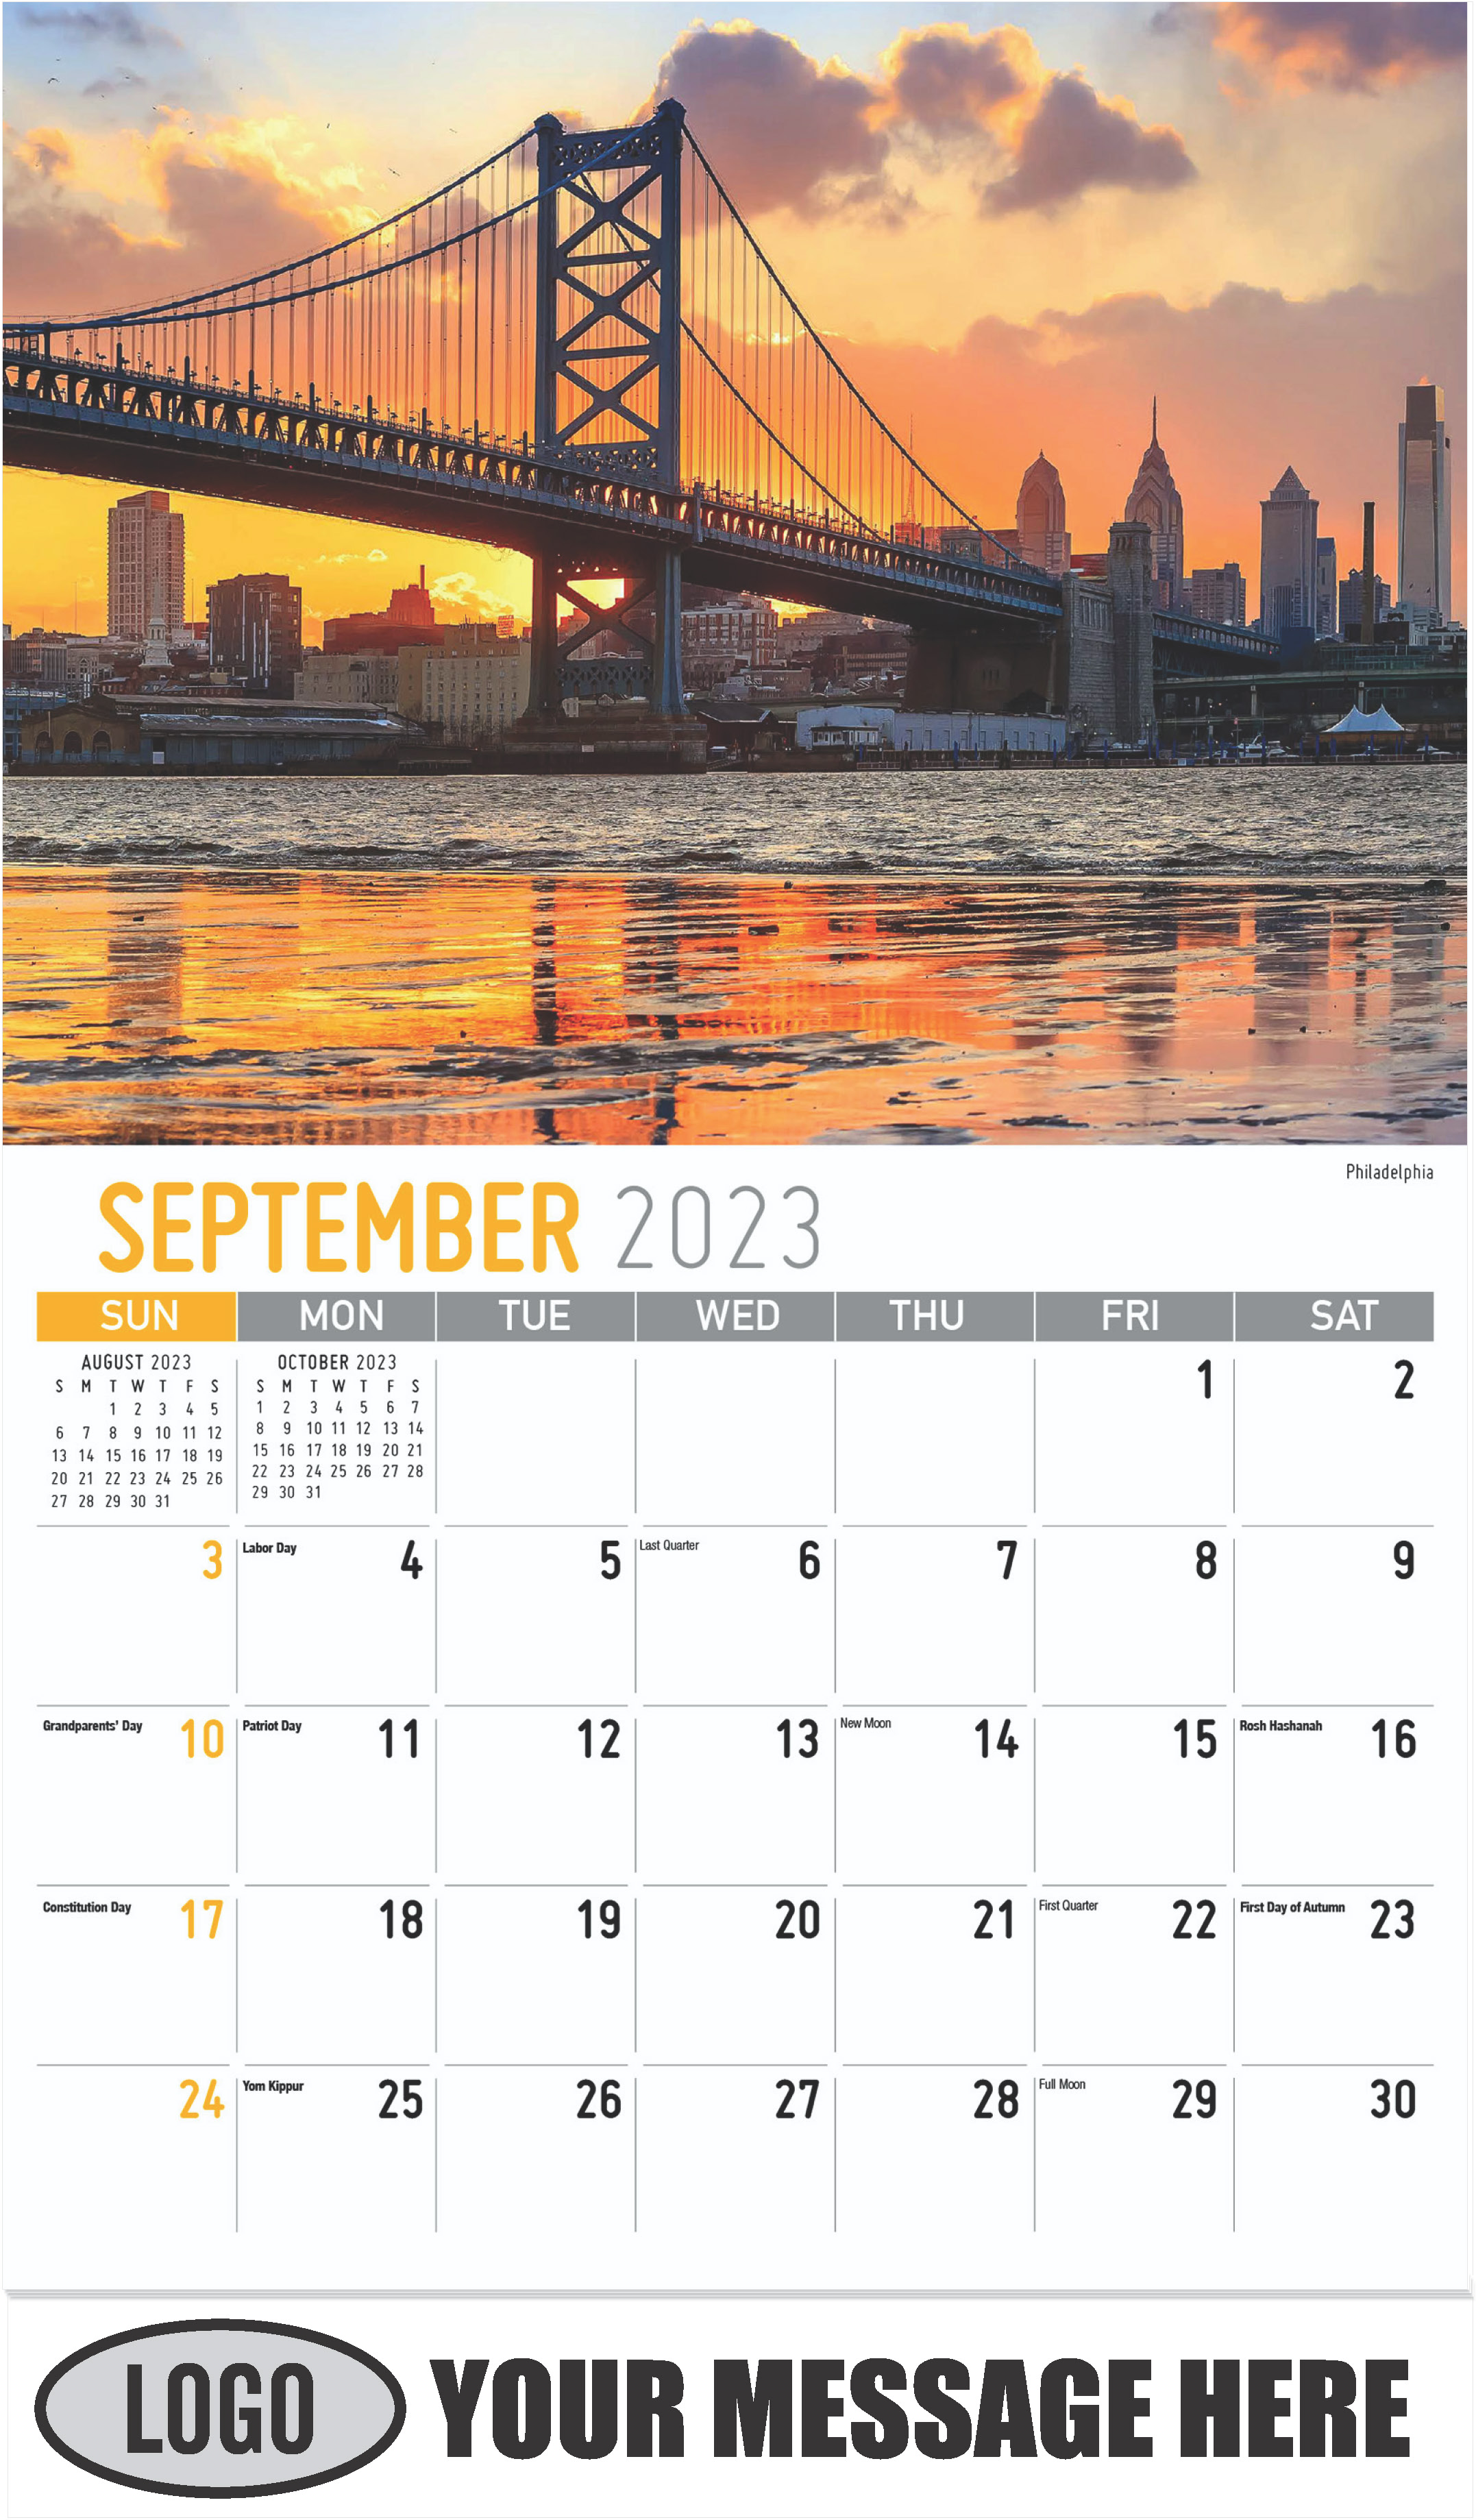 Philadelphia - September - Scenes of Pennsylvania 2023 Promotional Calendar